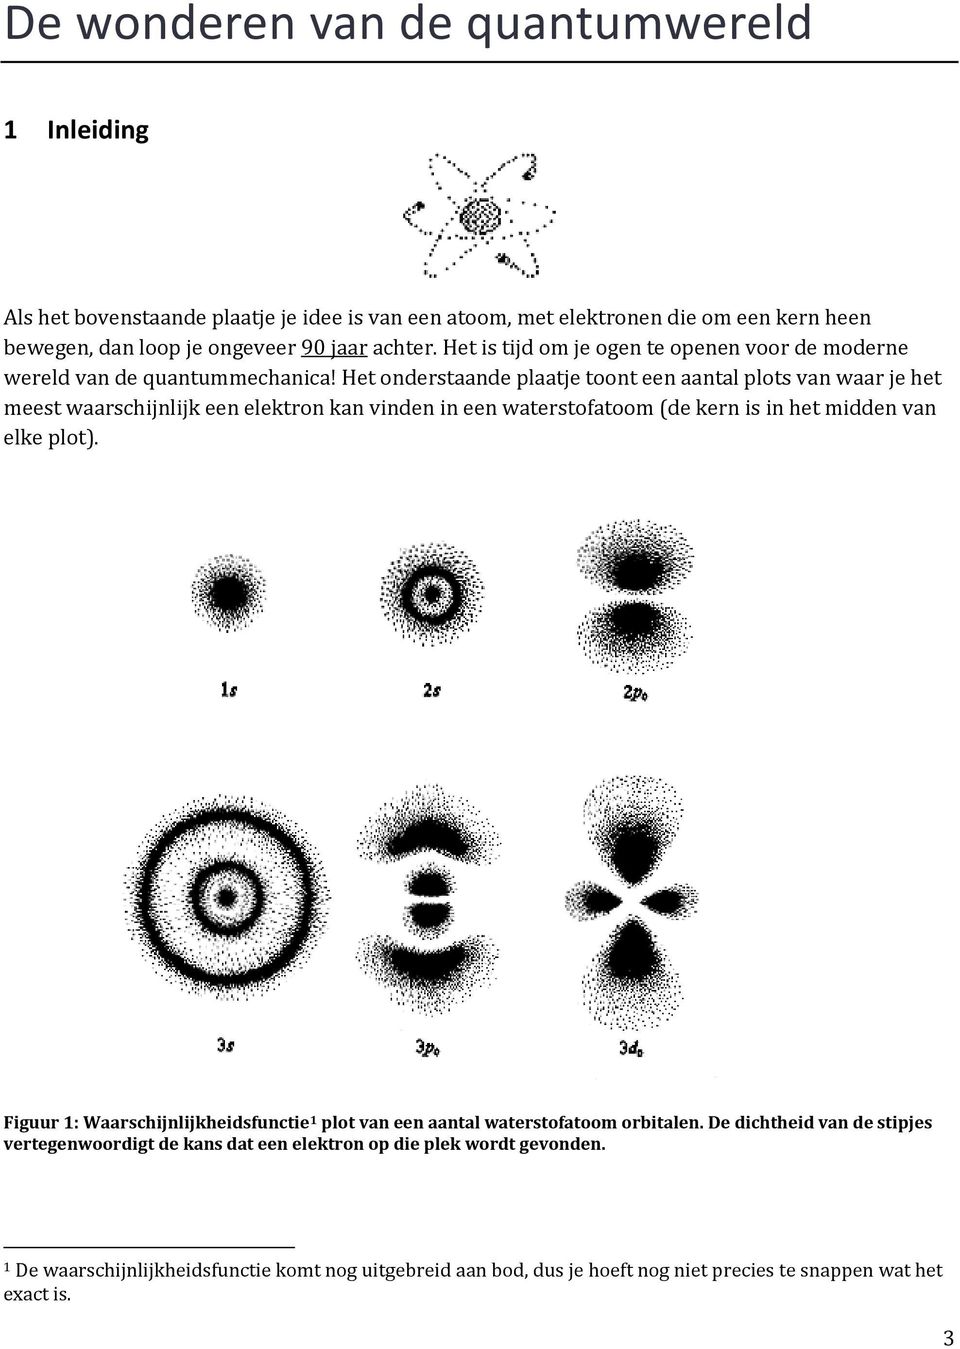 Het onderstaande plaatje toont een aantal plots van waar je het meest waarschijnlijk een elektron kan vinden in een waterstofatoom (de kern is in het midden van elke plot).